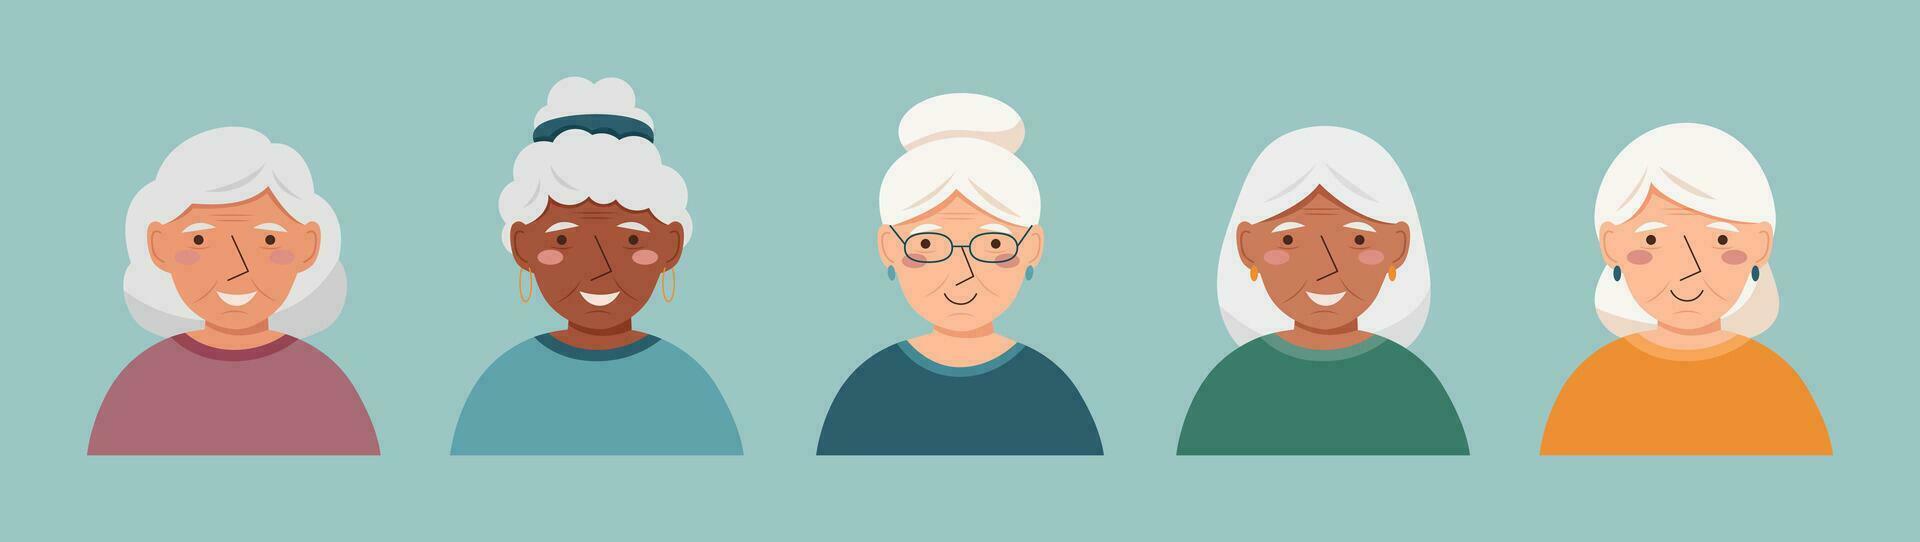 uppsättning av äldre kvinnor avatars vektor